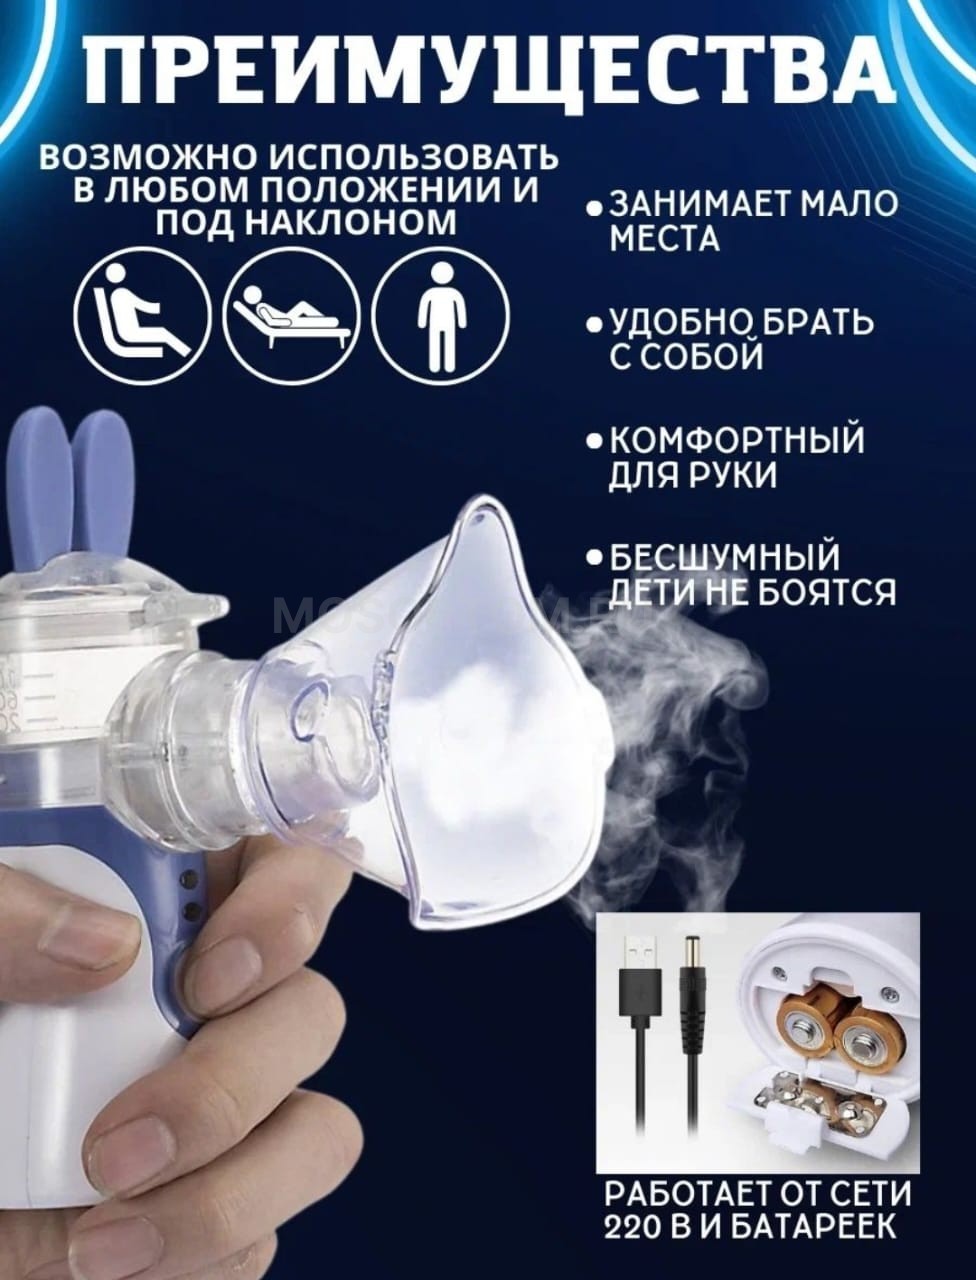 Ингалятор небулайзер для детей и взрослых Mesh Nebulizer YM-252 оптом - Фото №5